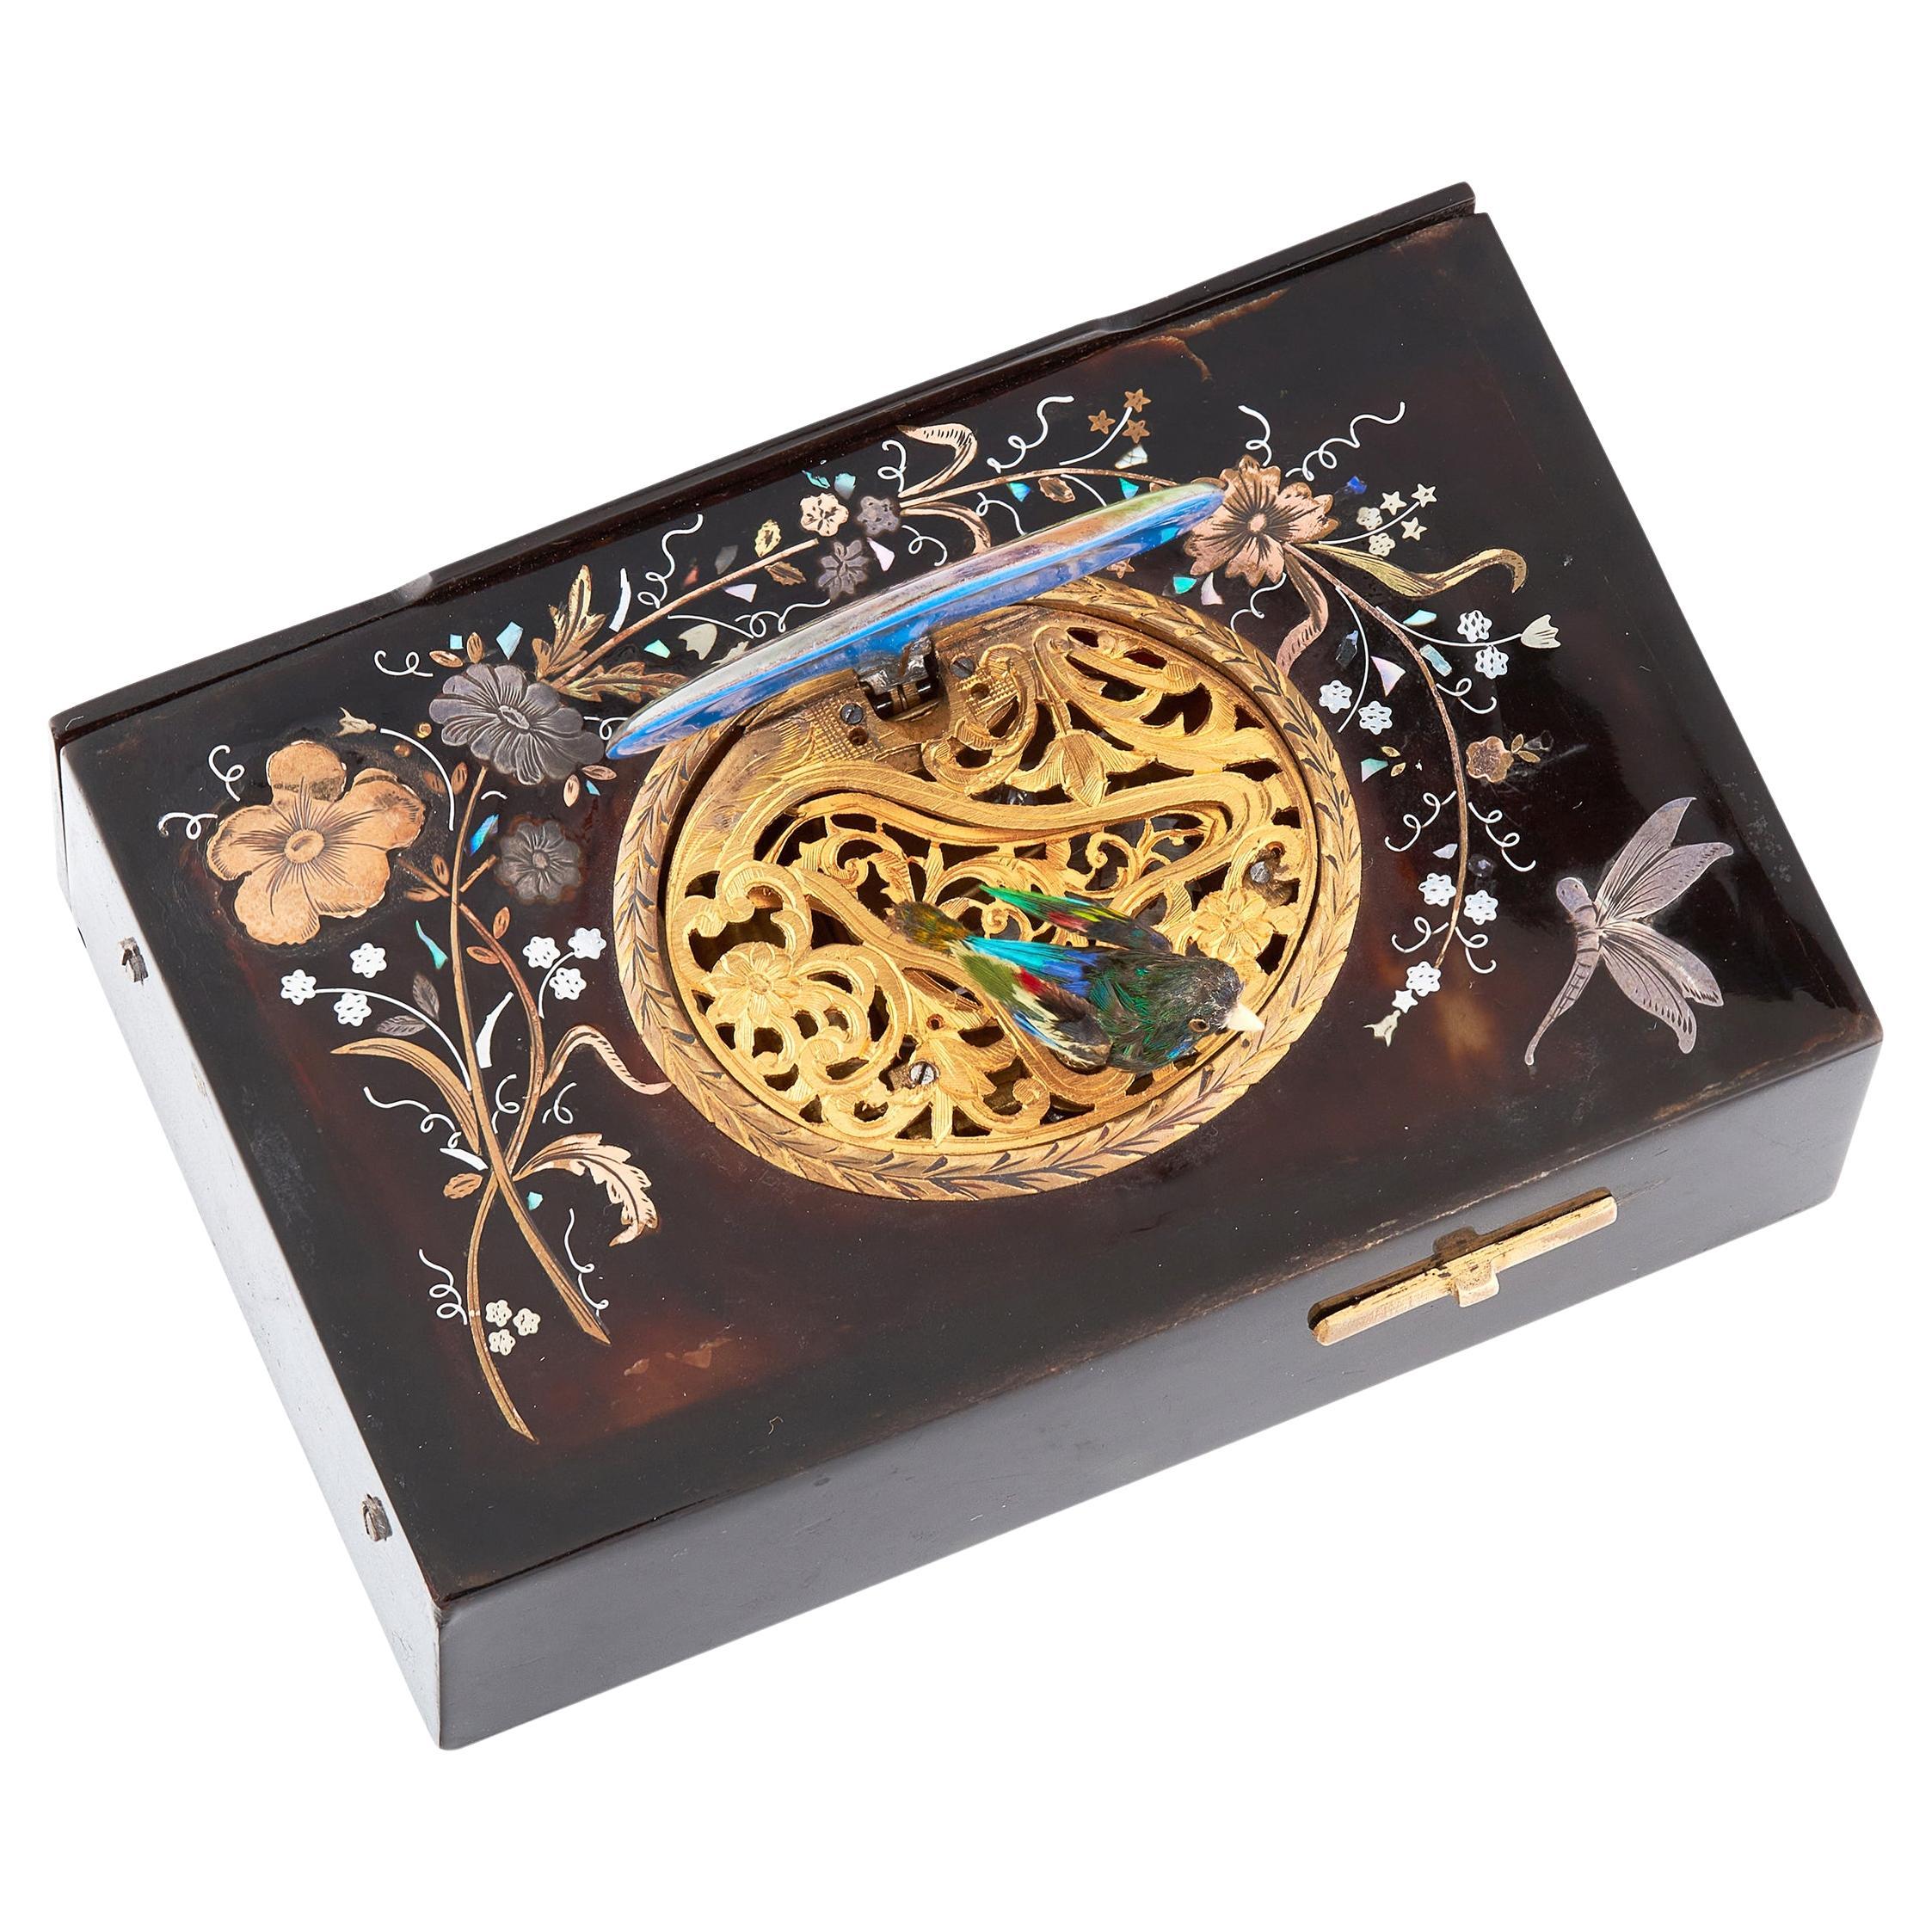 Unglaublich seltene und exquisite Singing Bird Box, inspiriert von Charles Bruguier